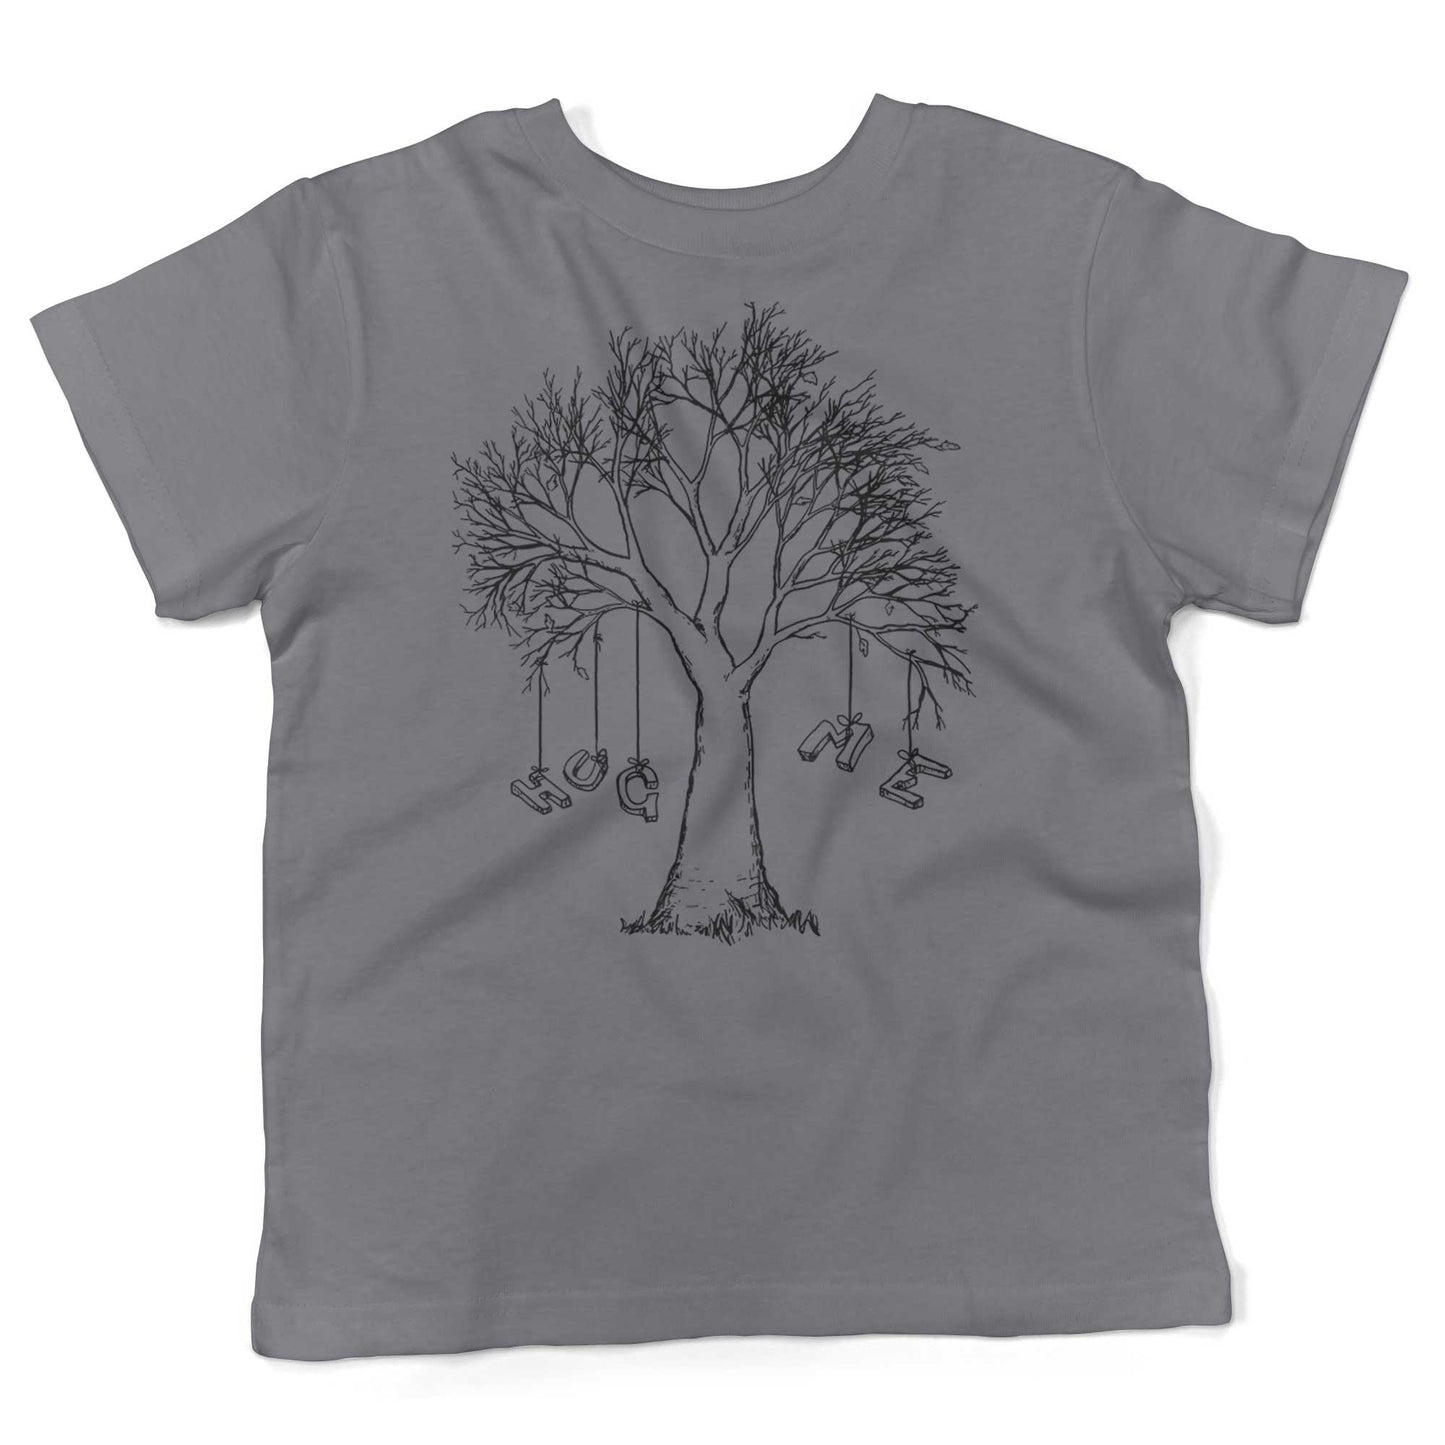 Hug A Tree Toddler Shirt-